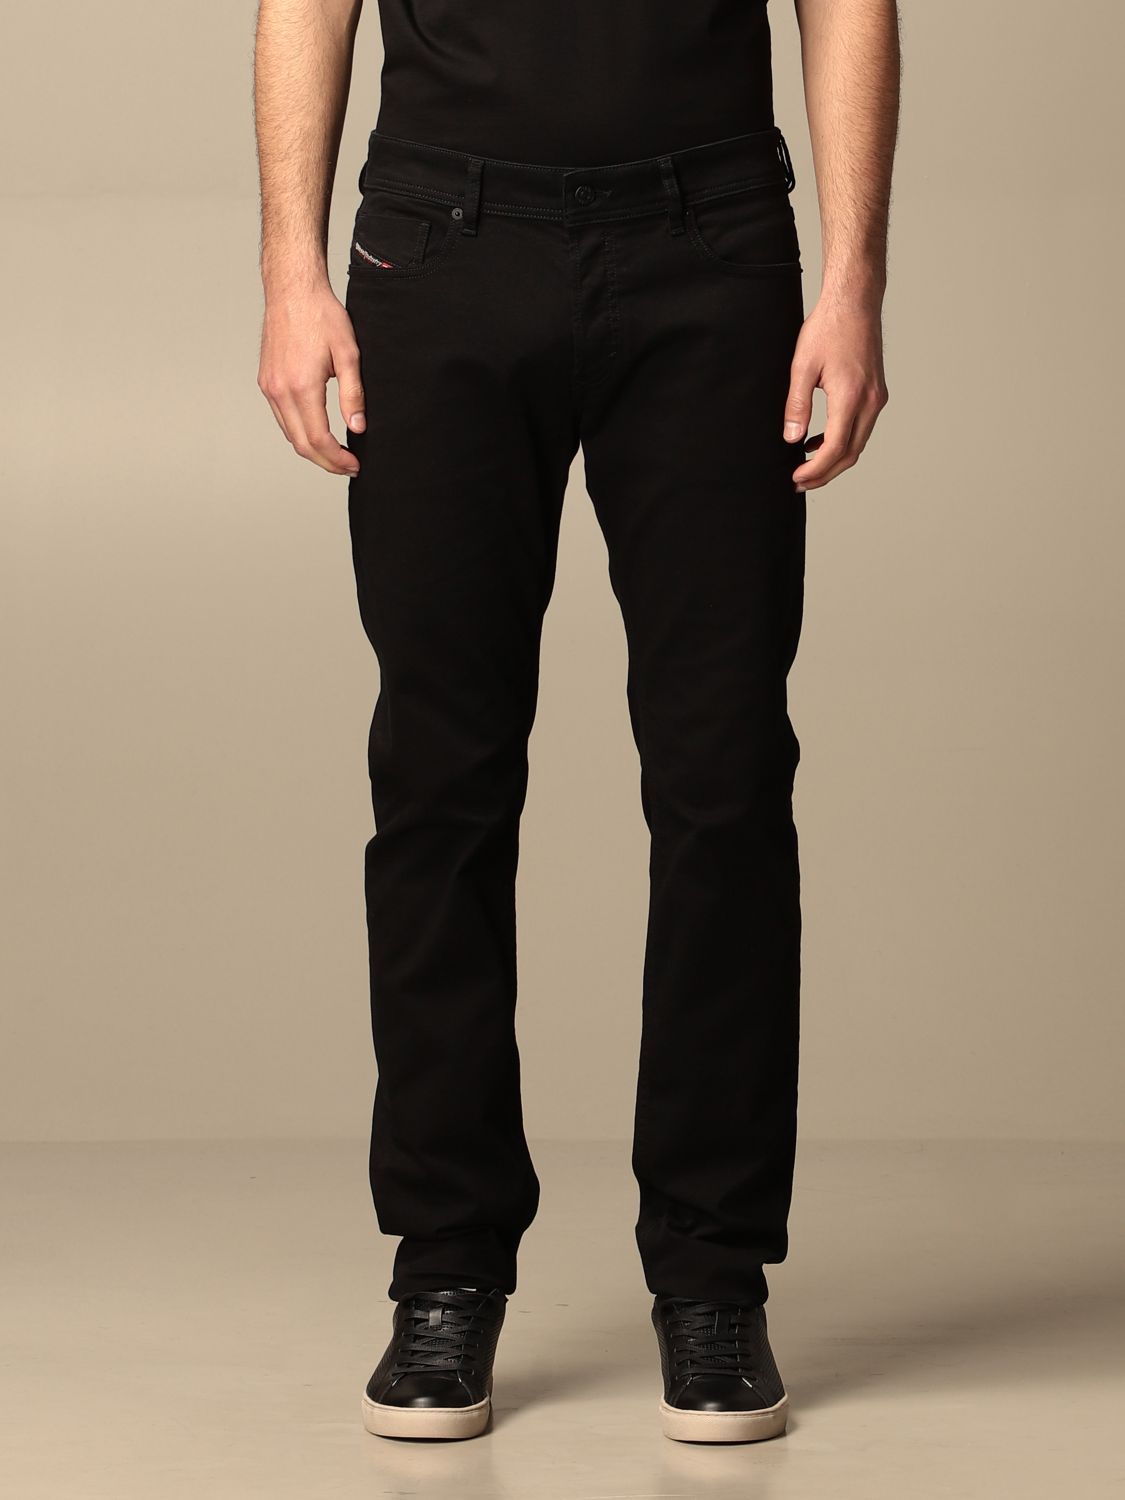 DIESEL: 5-pocket jeans - Black | DIESEL jeans 00SWJF 069EI online at ...